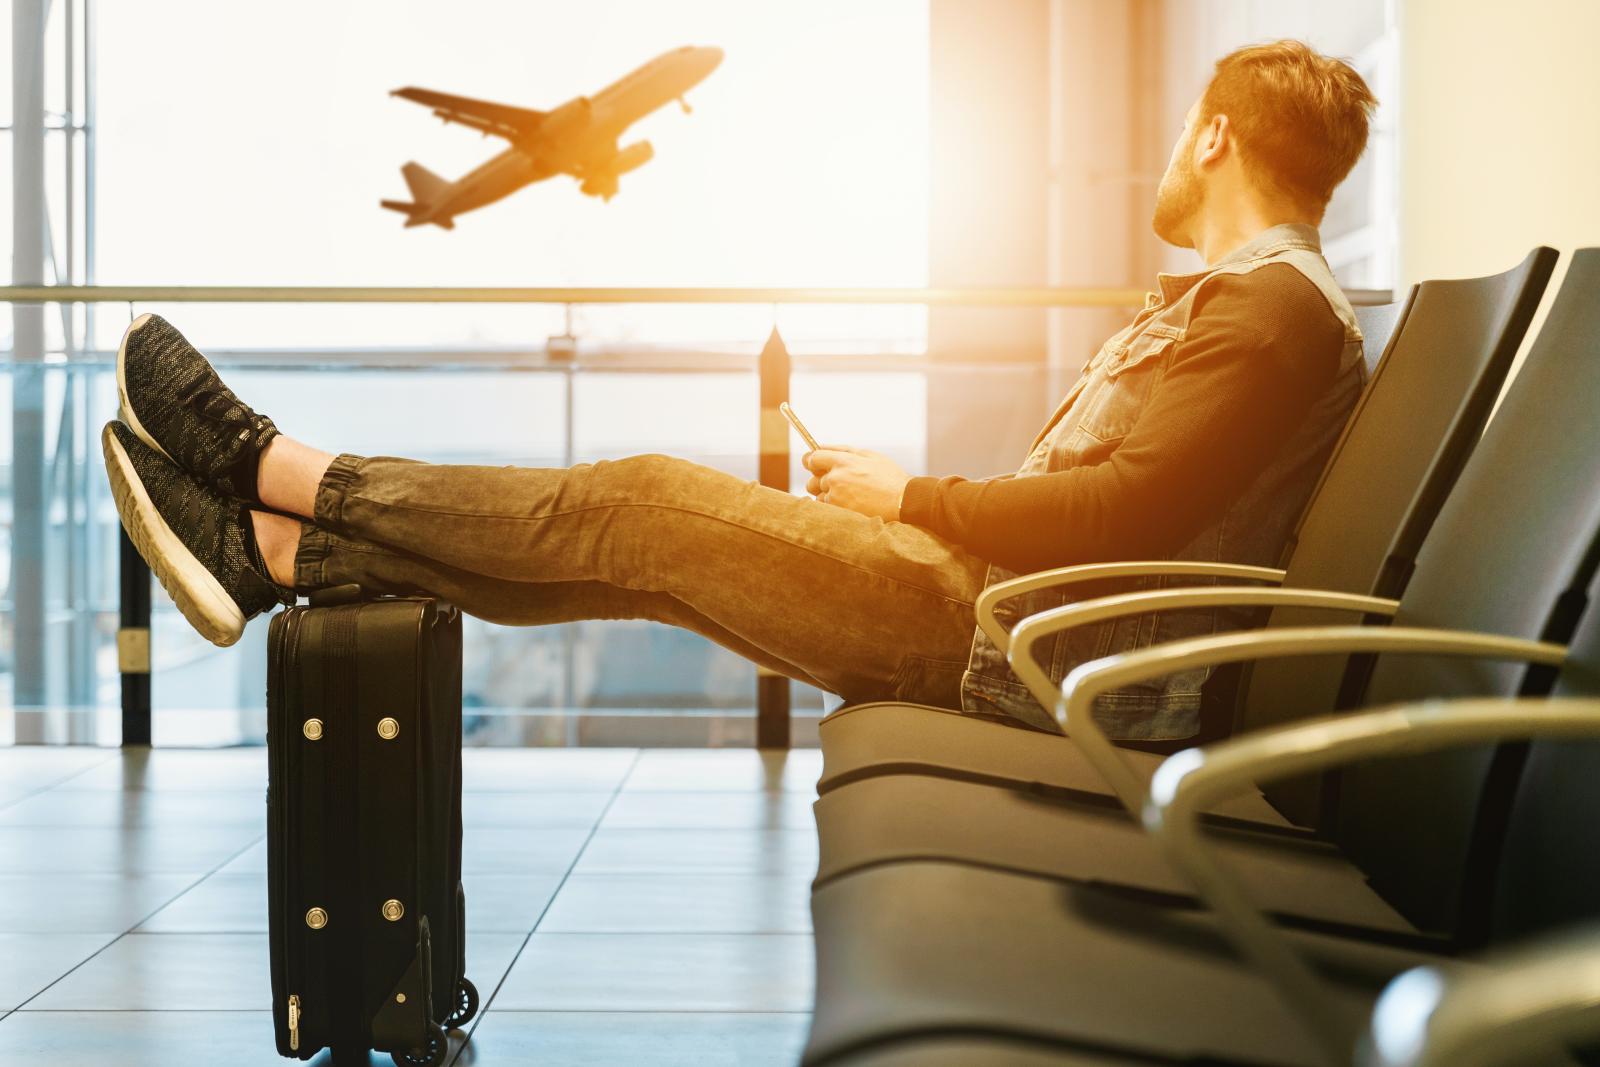 jeune homme assis dans un aéroport regardant un avion décoller